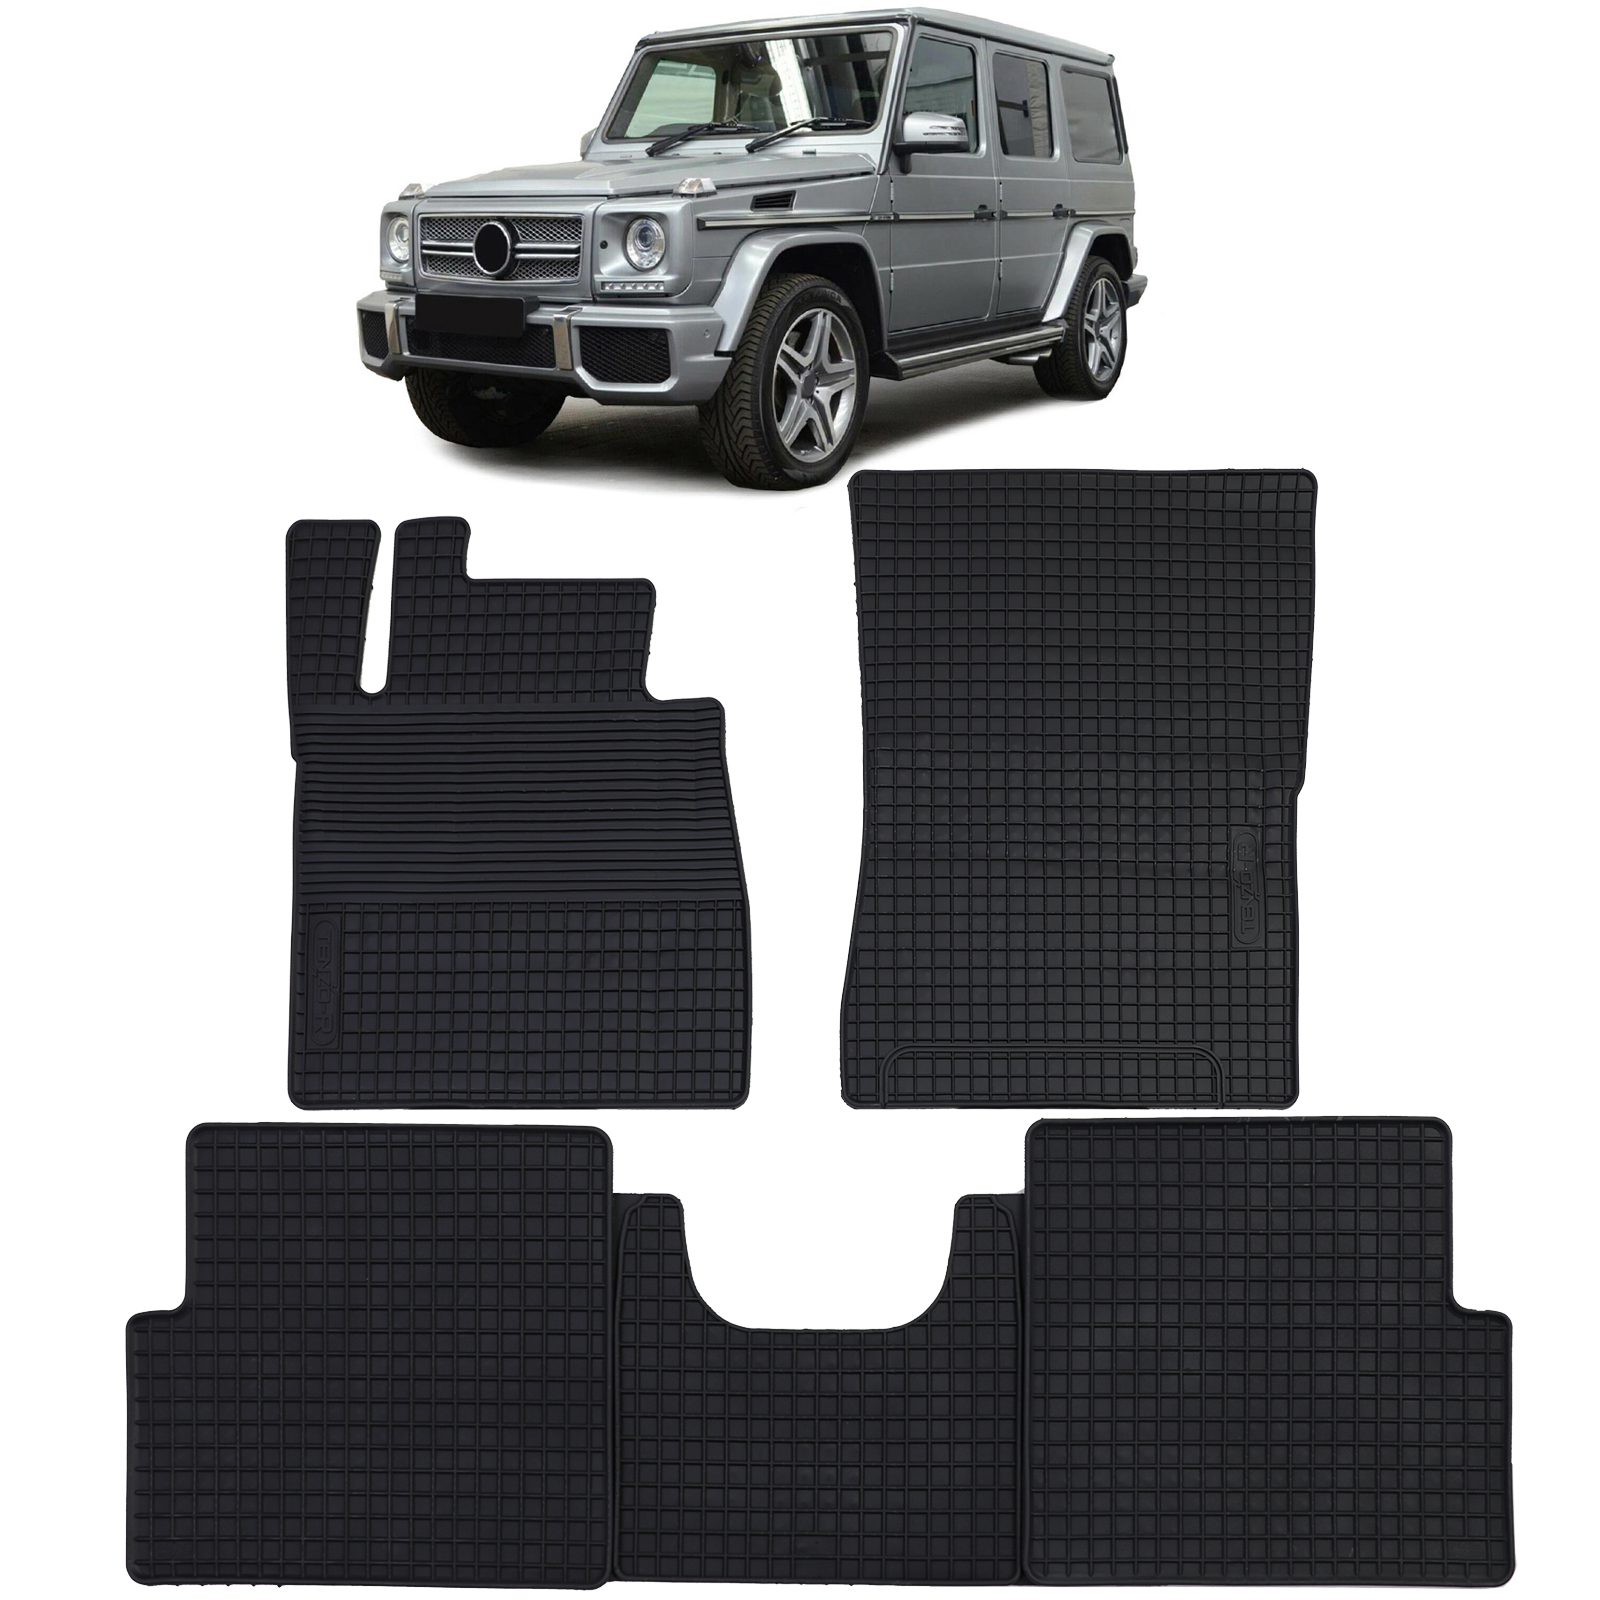 Fußmatten Gummi Set Schwarz für kaufen G-Klasse Auto Mercedes 89-18 W463 Premium